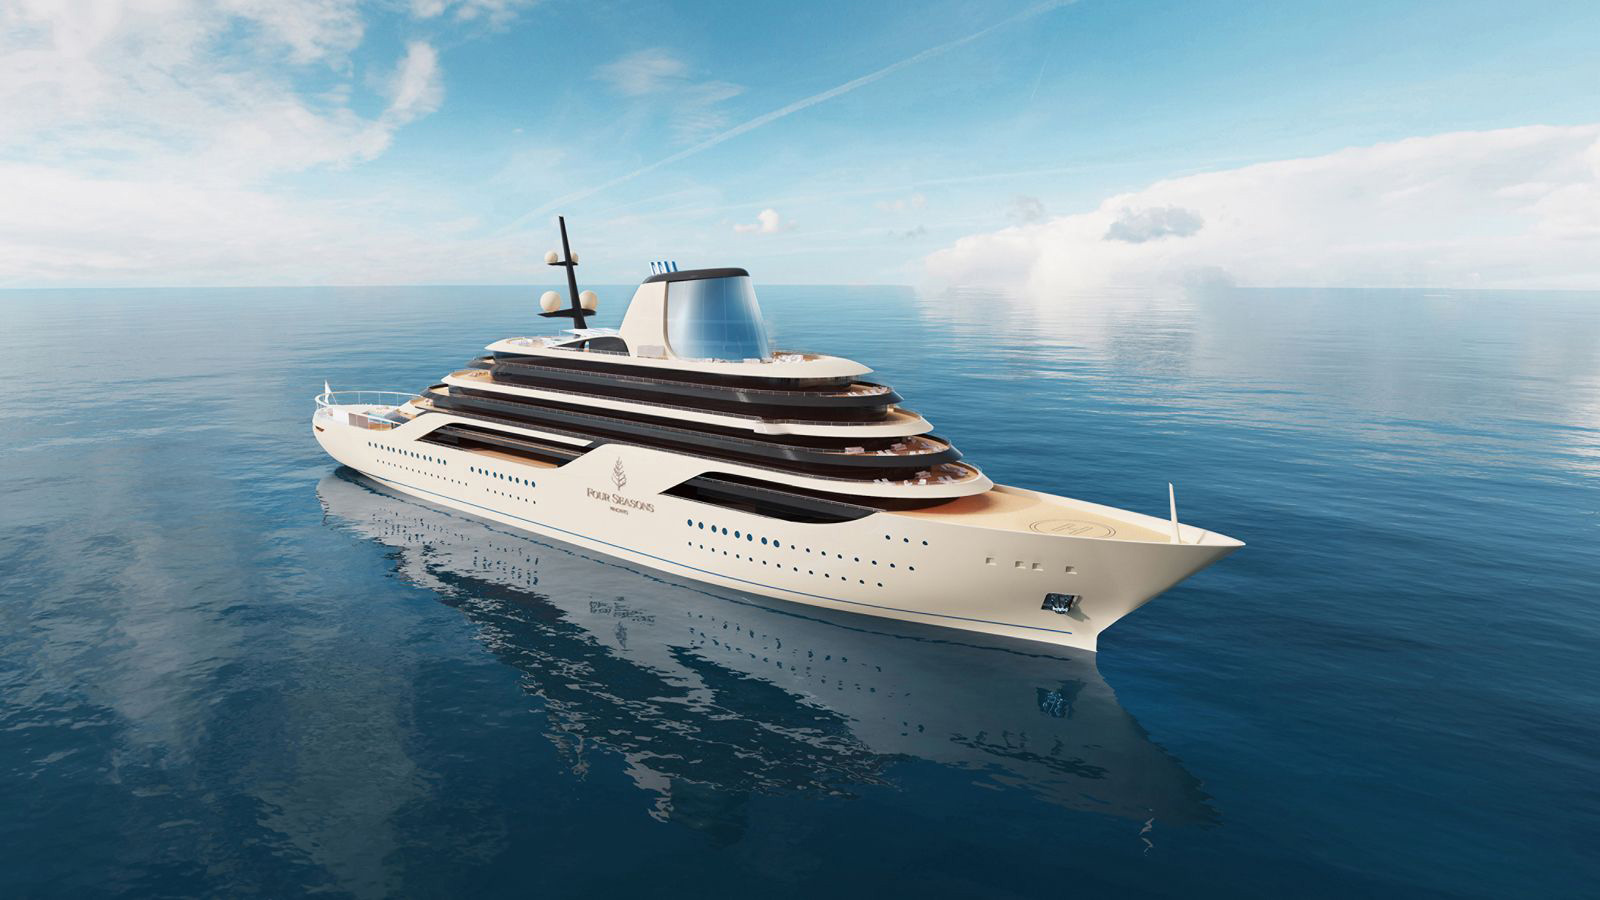 Fincantieri построит 207-метровую яхту-отель Four Seasons Yacht